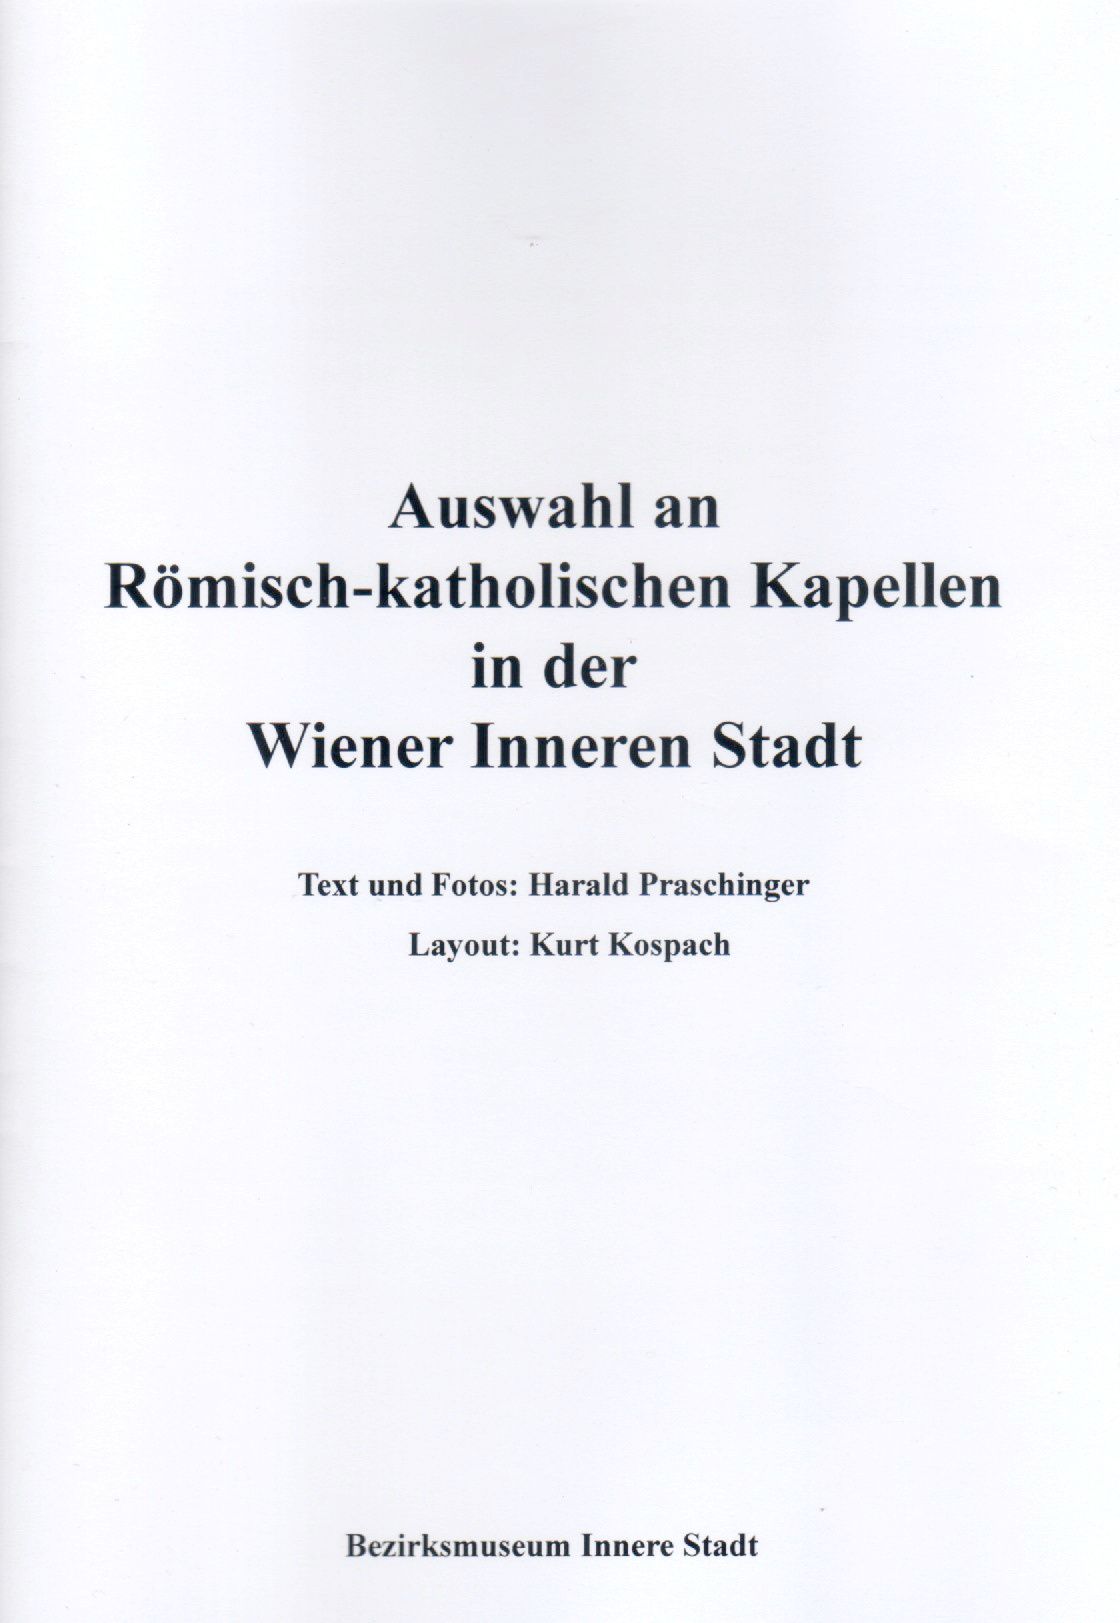 Publikation: Römisch-katholische Kapellen in der Wiener Inneren Stadt, Bezirksmuseum Innere Stadt